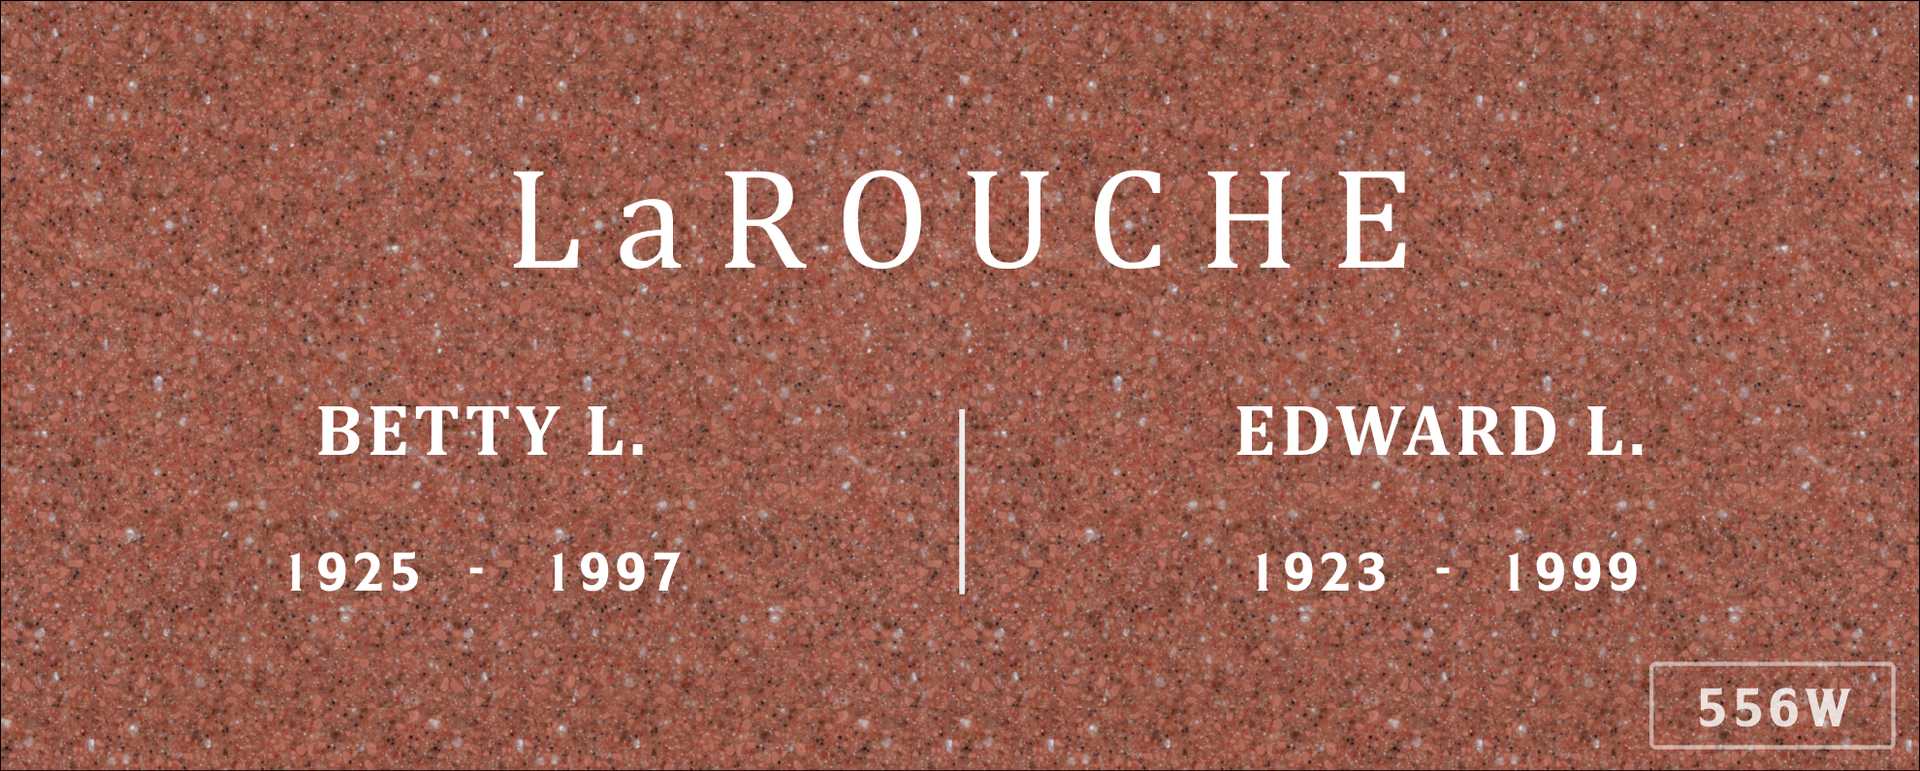 Betty L. La Rouche's grave